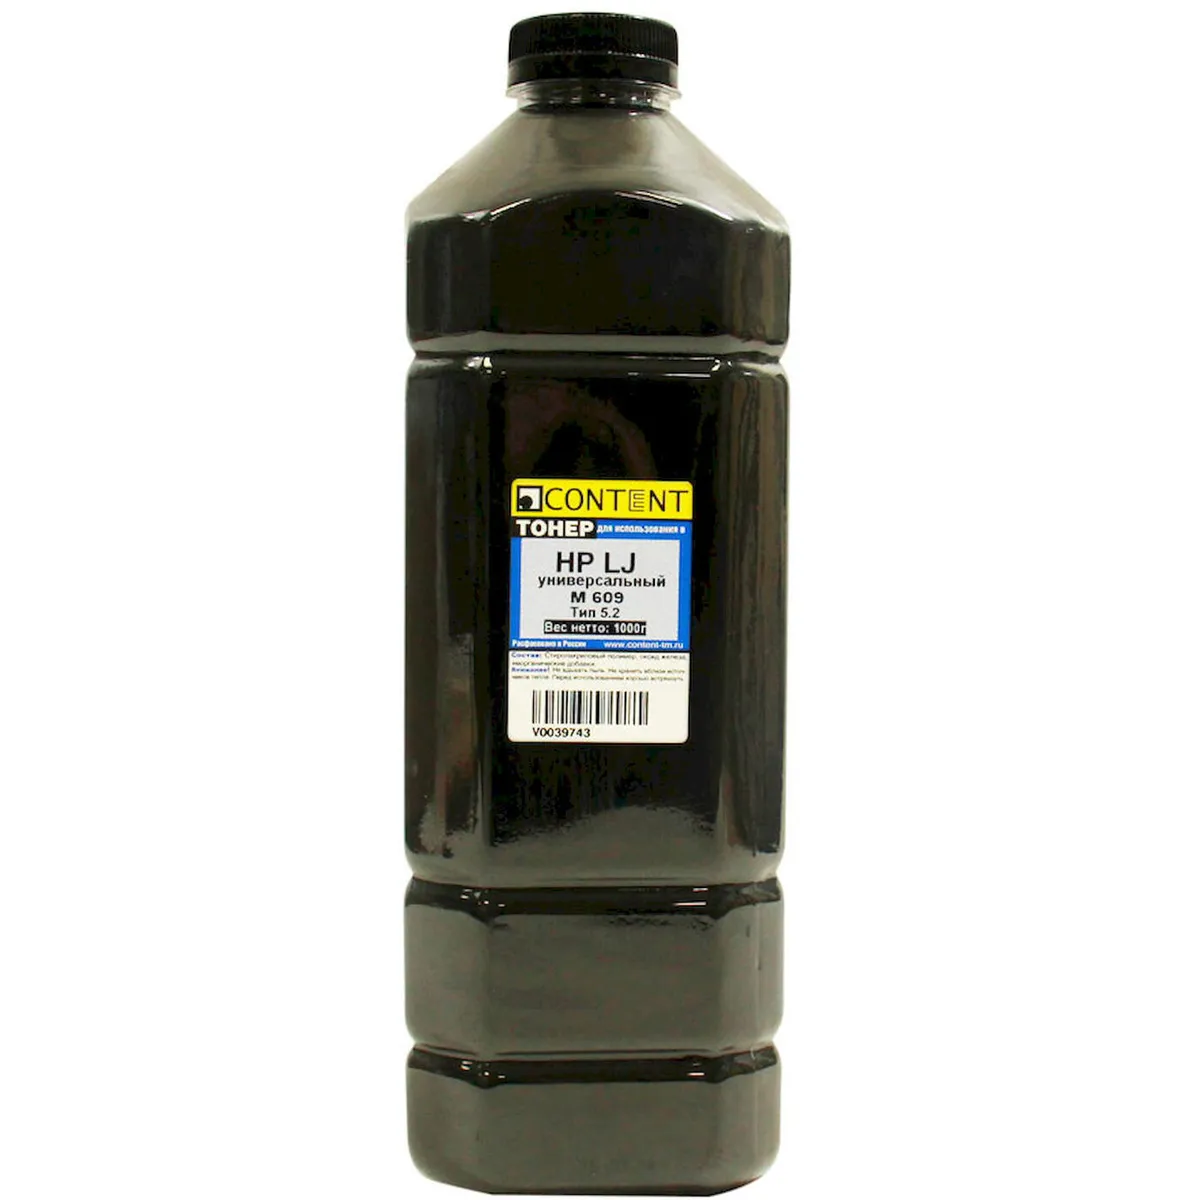 Тонер Content, канистра 1 кг, черный, совместимый для LJ M609, Тип 5.2 (4010715509361)